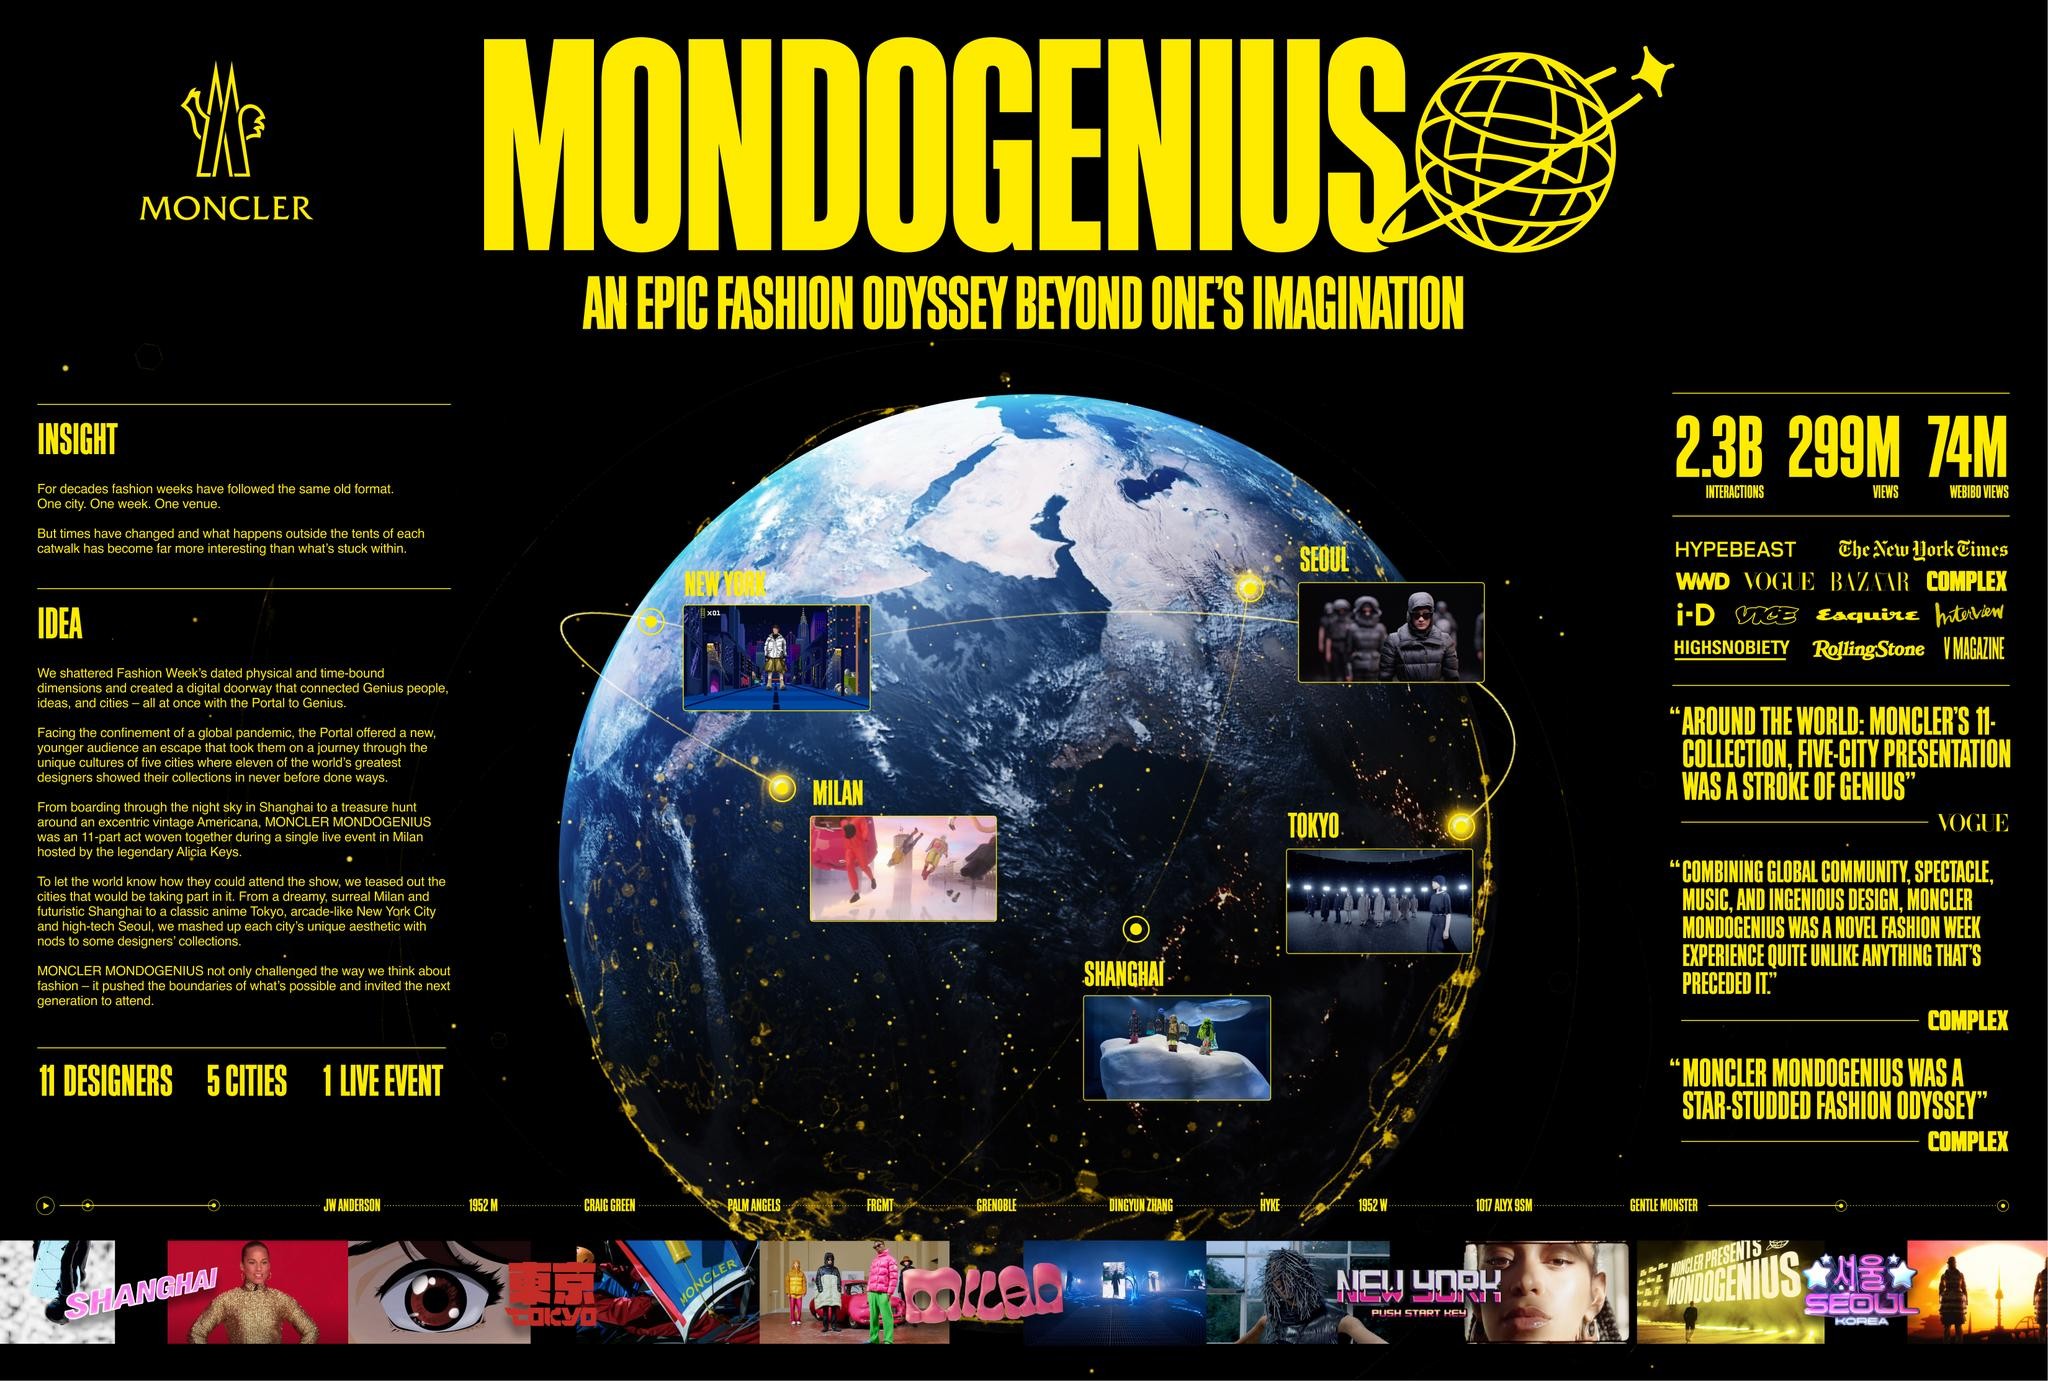 Moncler MondoGenius